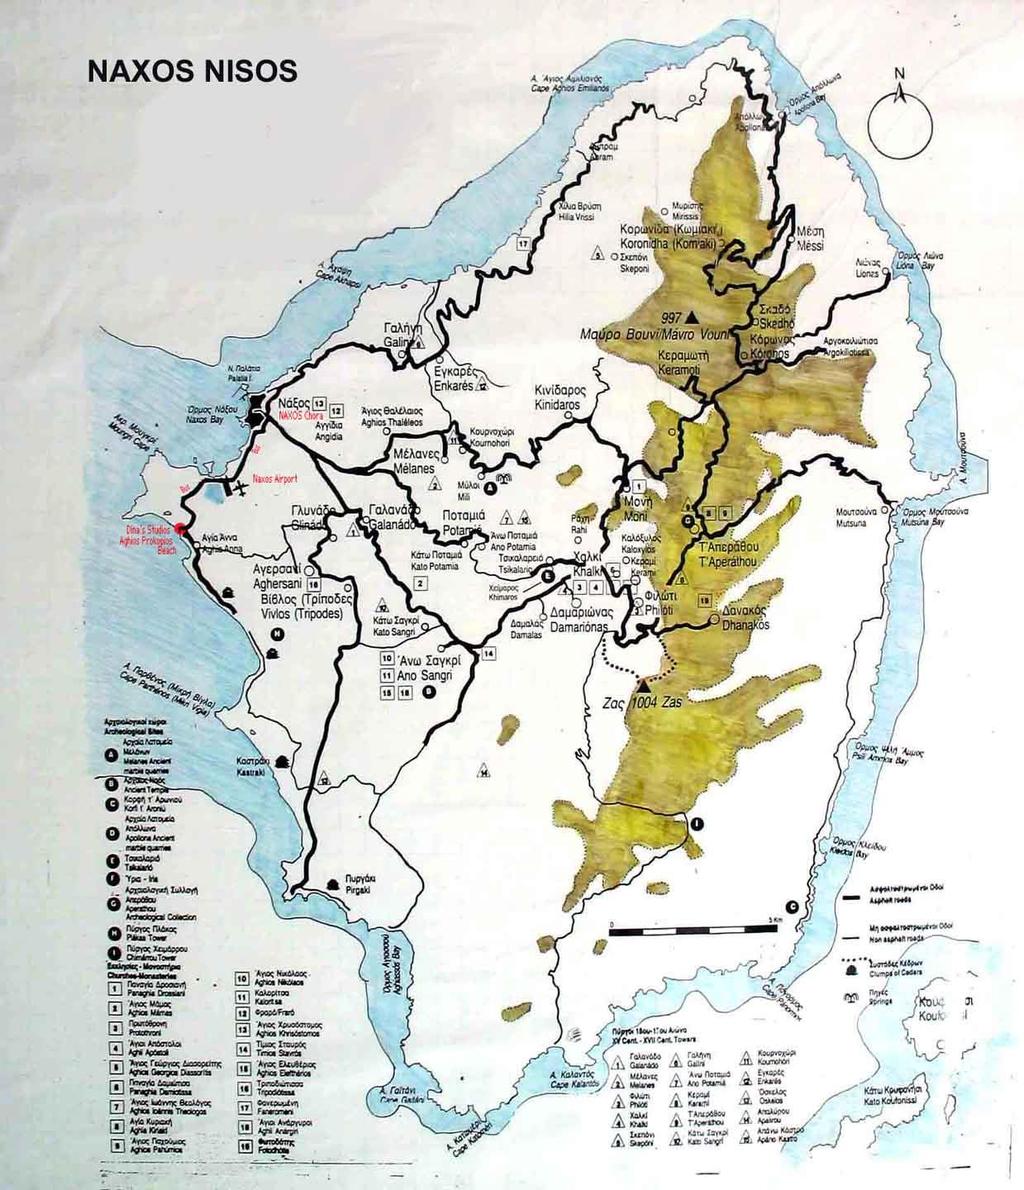 3. ΠΕΡΙΓΡΑΦΗ ΤΗΣ ΥΦΙΣΤΑΜΕΝΗΣ ΟΙΚΟΝΟΜΙΚΗΣ ΚΑΤΑΣΤΑΣΗΣ ΣΤΗ ΝΑΞΟ Εικόνα 1: Χάρτης της Νάξου 3.1.Γενικά Στοιχεία Η Νάξος είναι το μεγαλύτερο σε έκταση νησί των Κυκλάδων με έκταση 429,79 τετρ.χλμ.